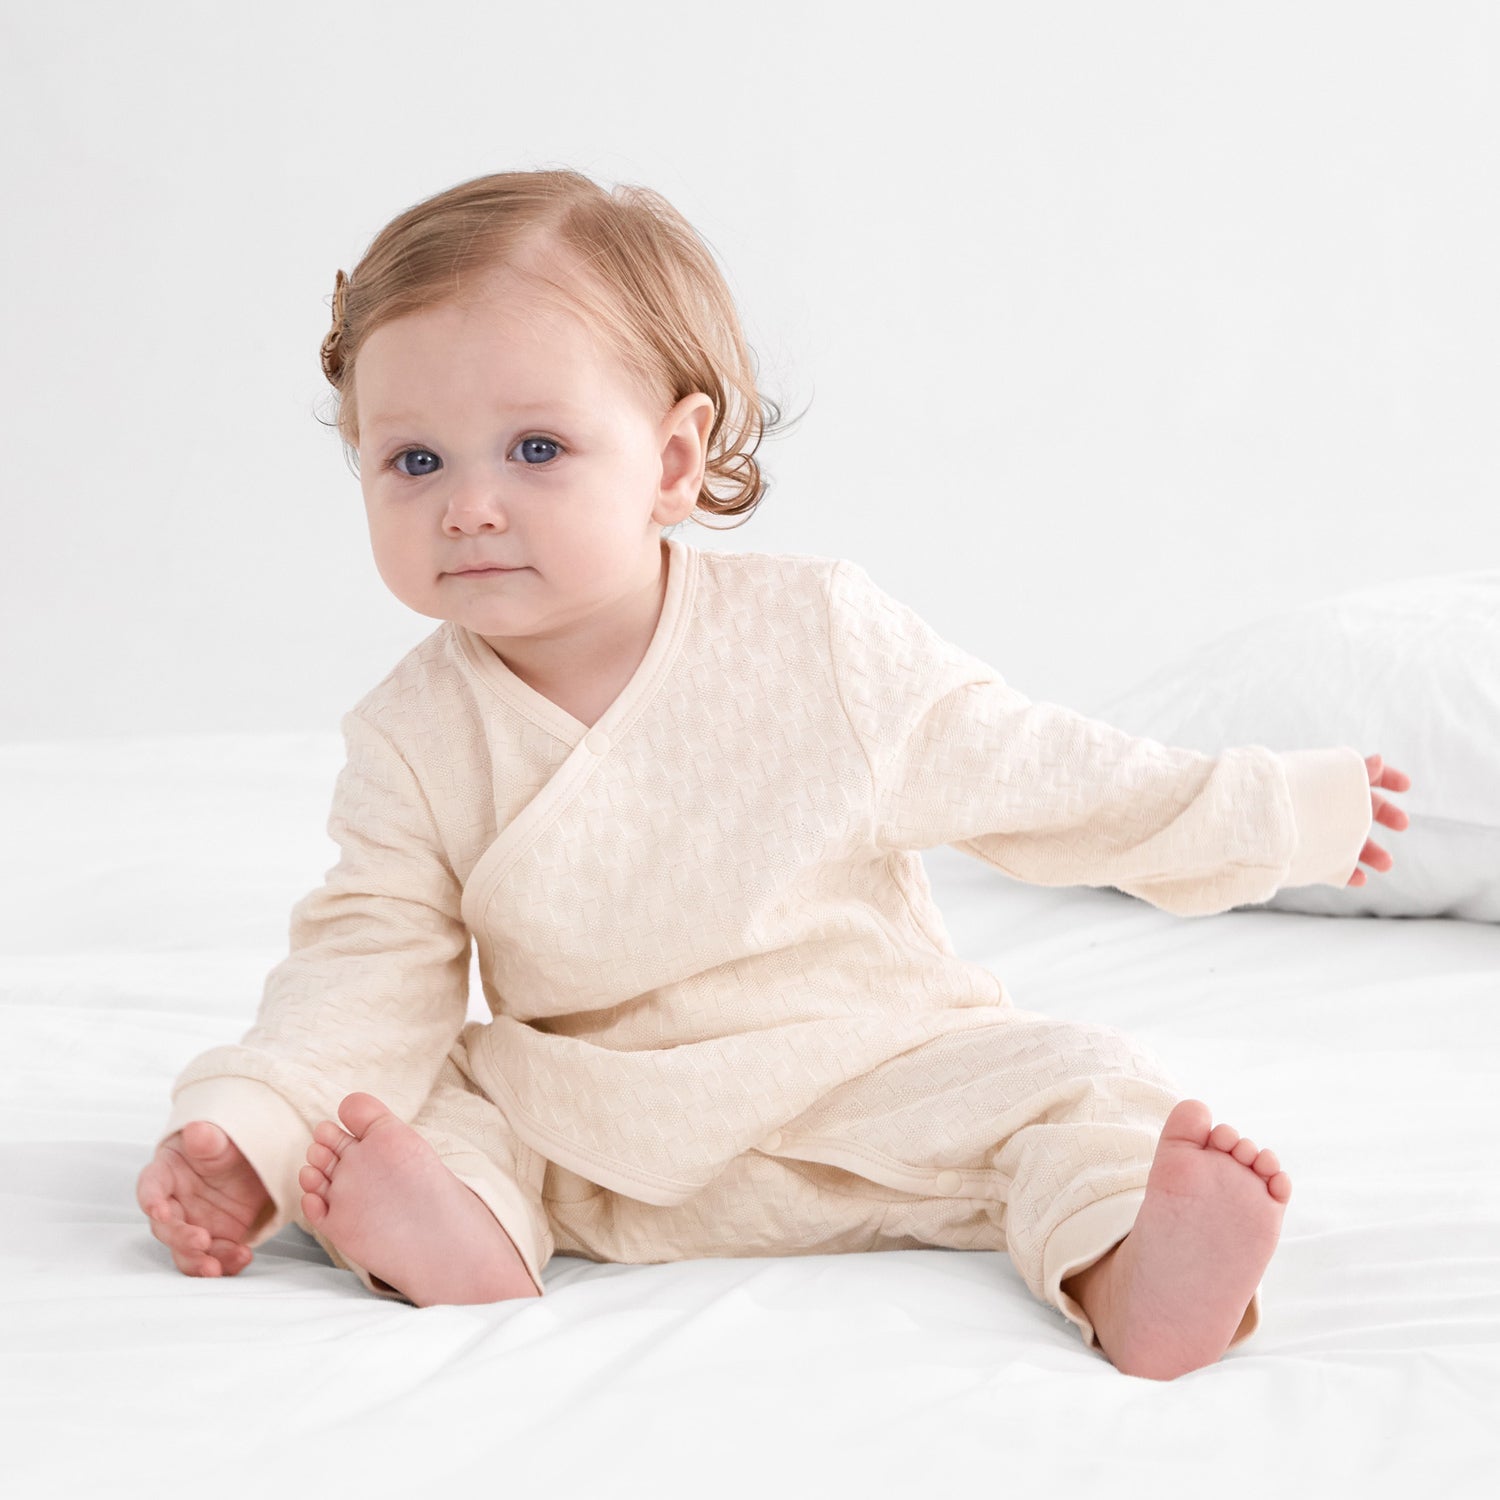 Baby Cotton Footless Pajamas Square Grid